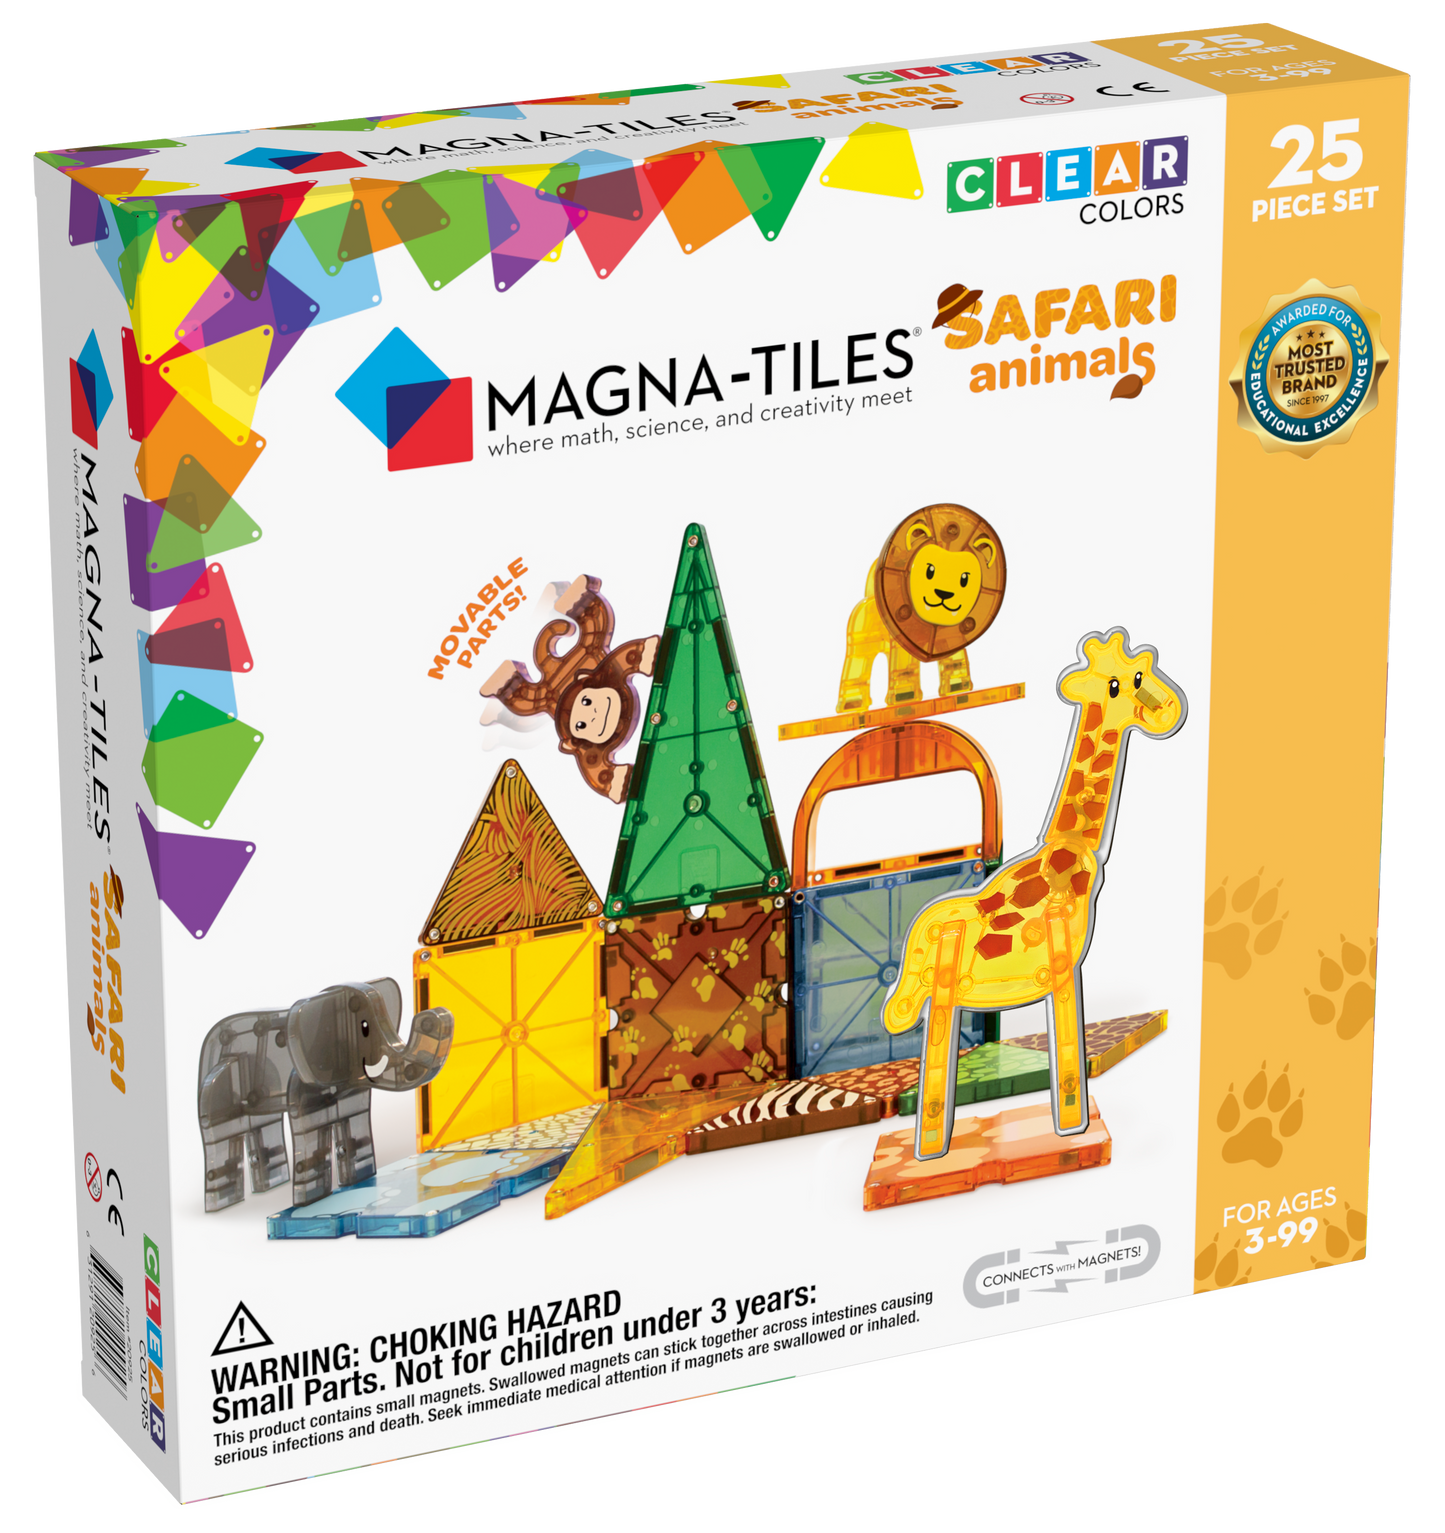 Safari Animals 25pcs Set by MAGNA-TILES